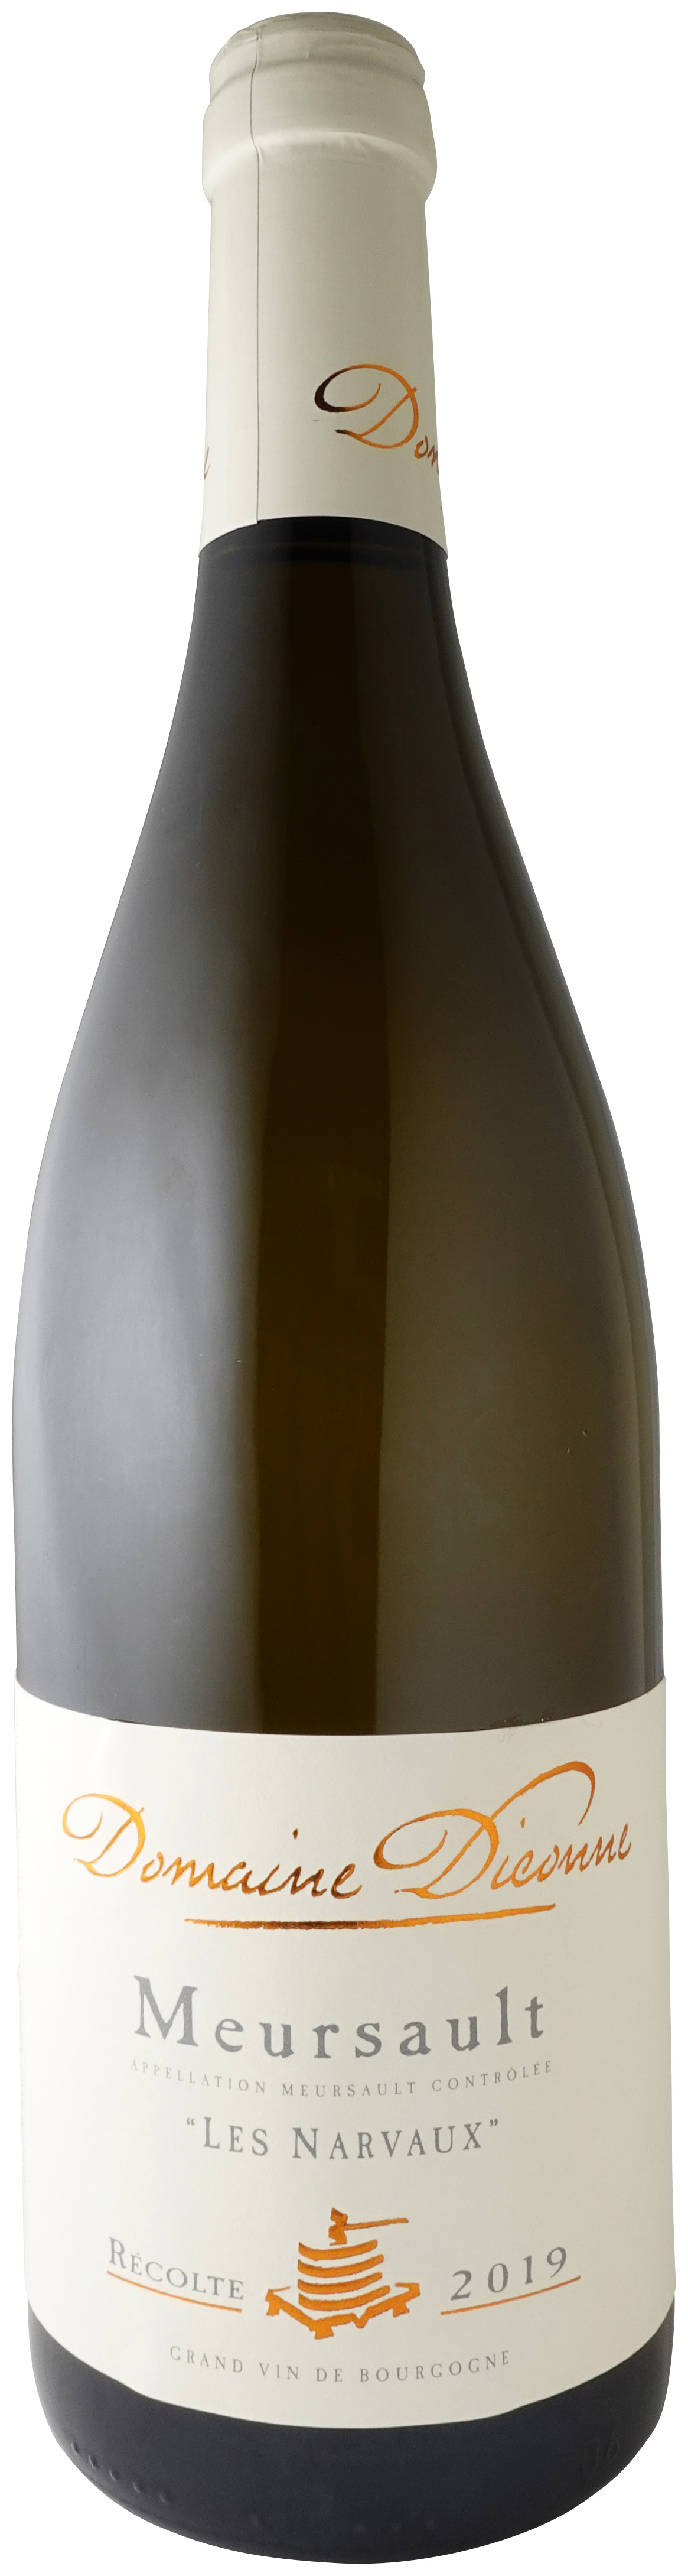 使い勝手の良い ムルソー プルミエ クリュ レ シャルム 2003 ルー デュモン レアセレクション 白ワイン